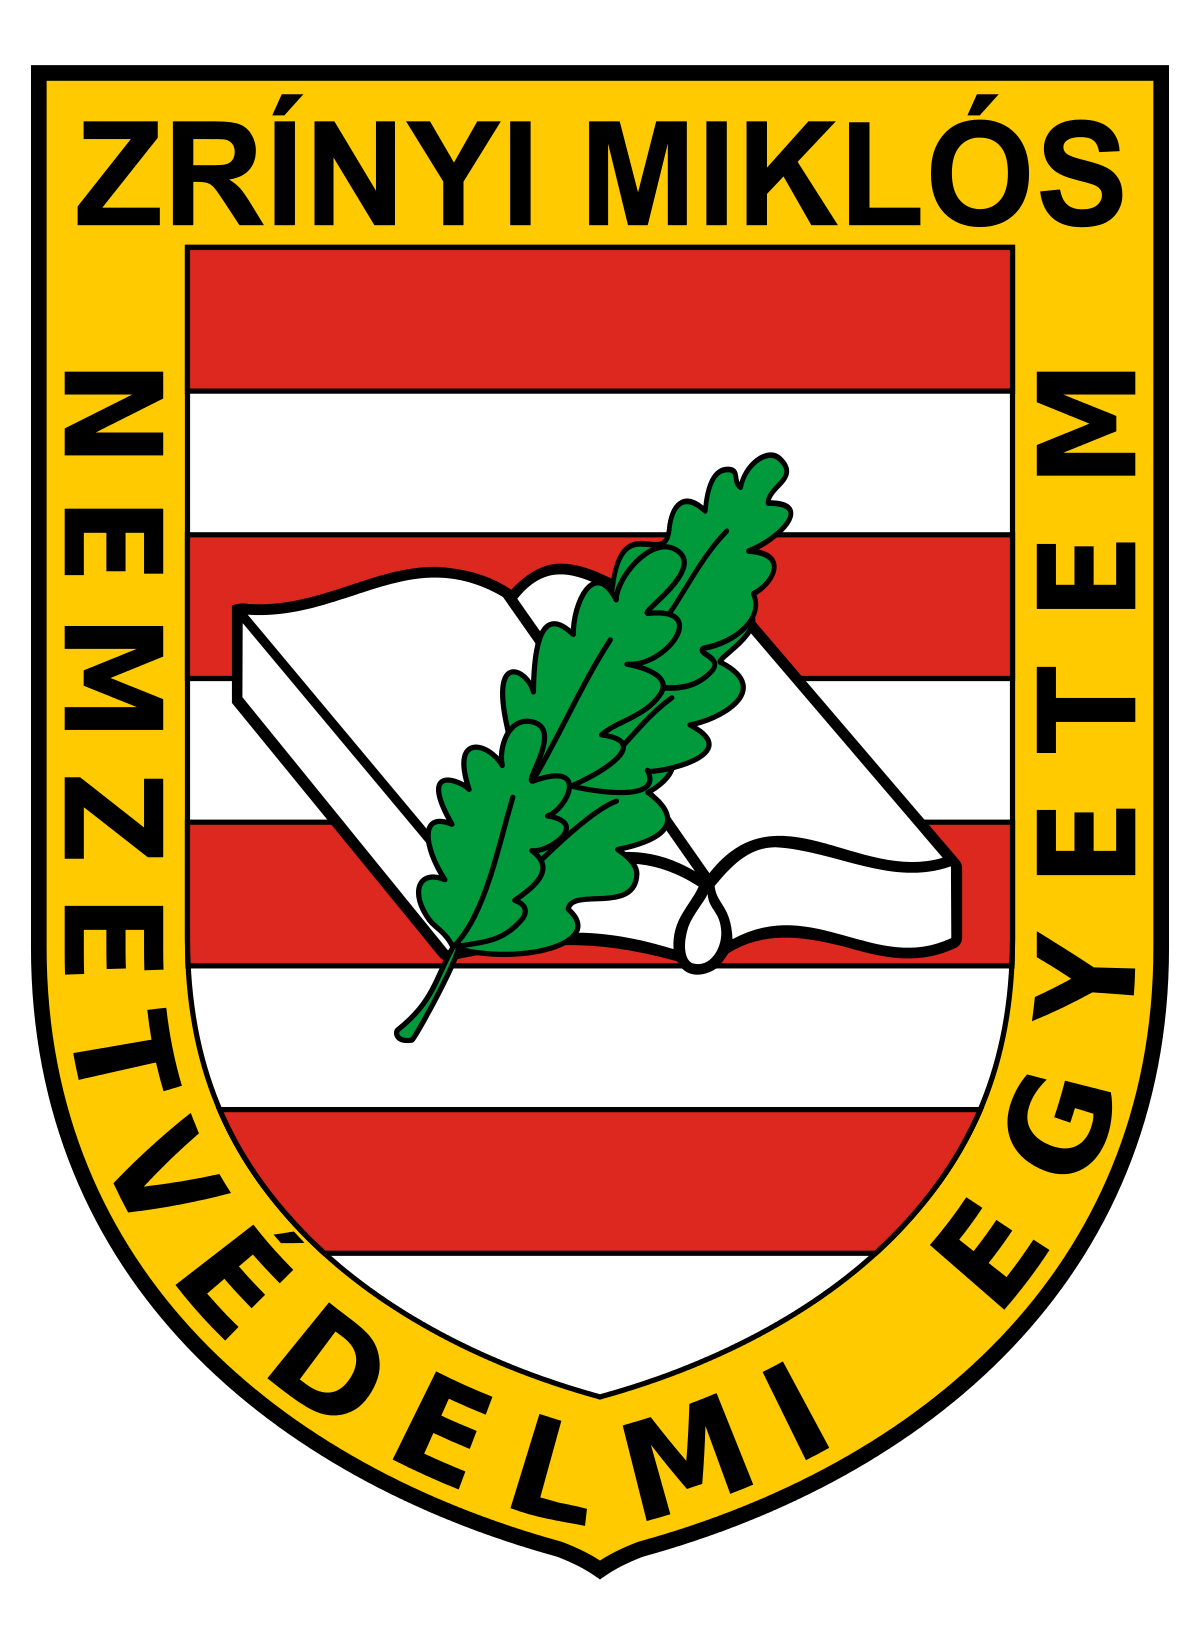 Zrínyi Miklós National Defence University logo